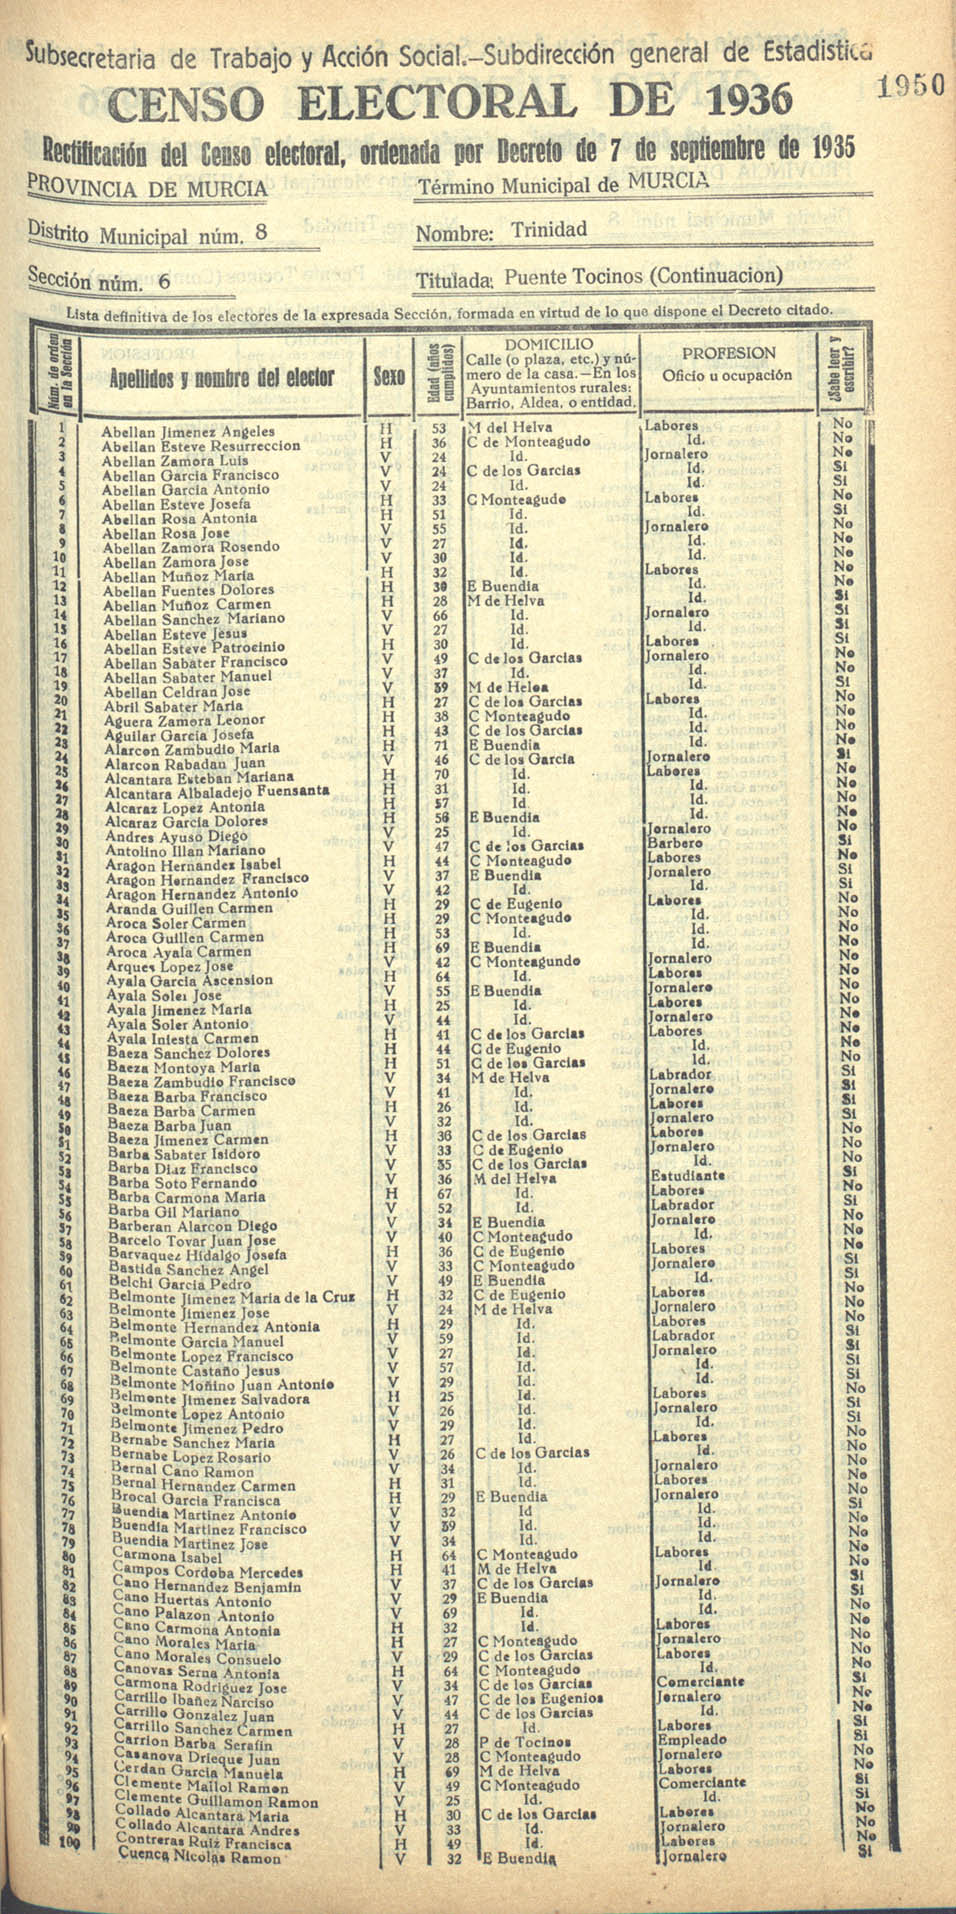 Censo electoral provincial de 1936. Murcia. Distrito 8º, Trinidad. Sección 6ª, Puente Tocinos (continuación)